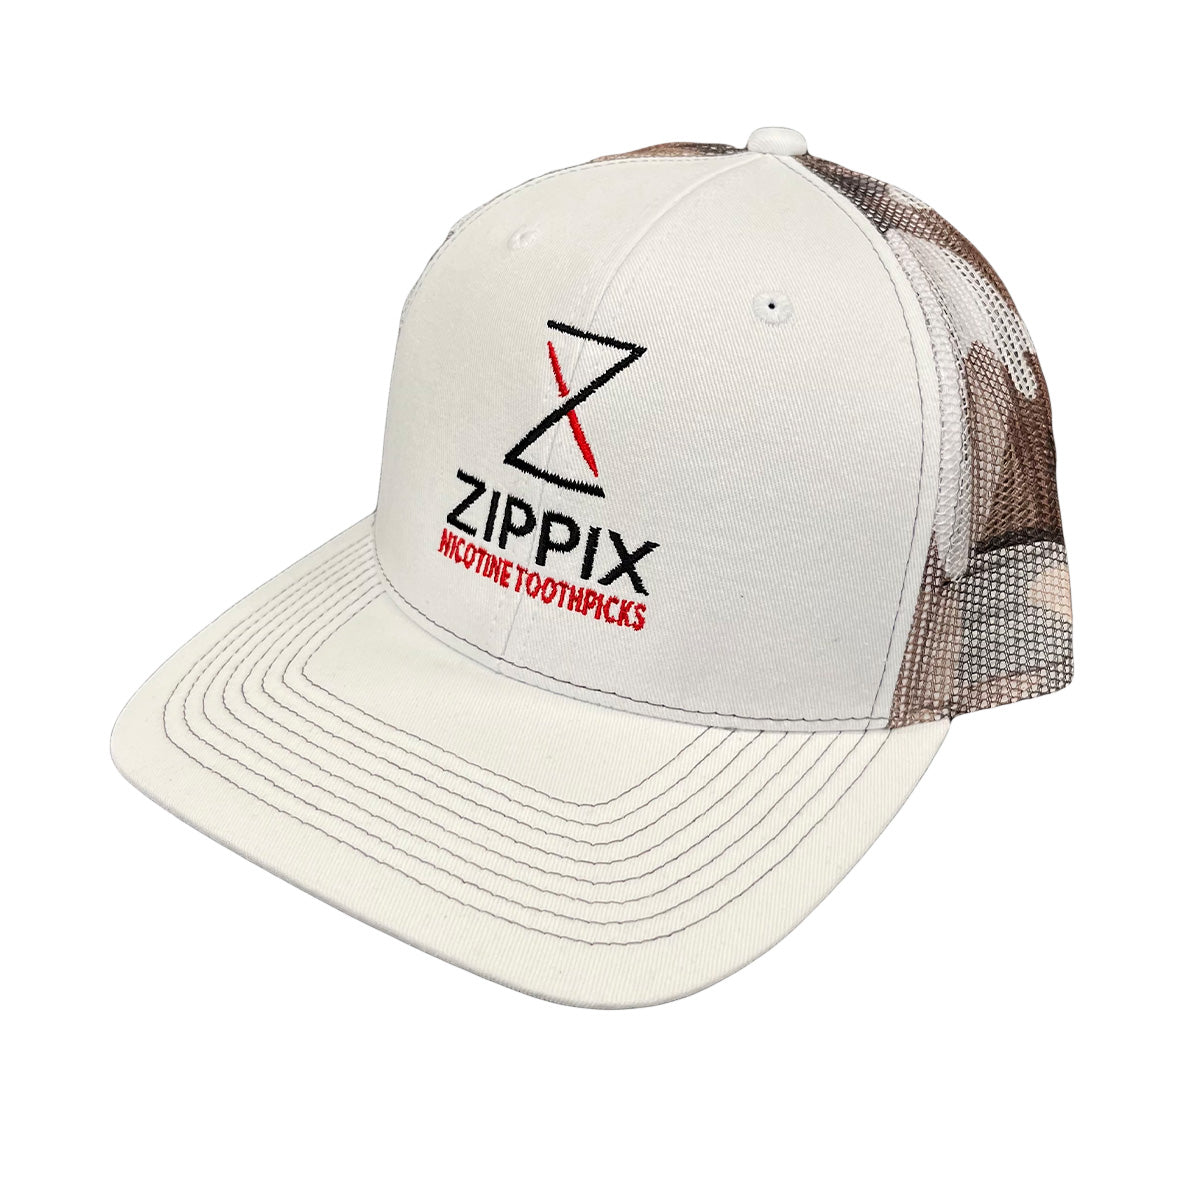 Zippix SnapBack Hats